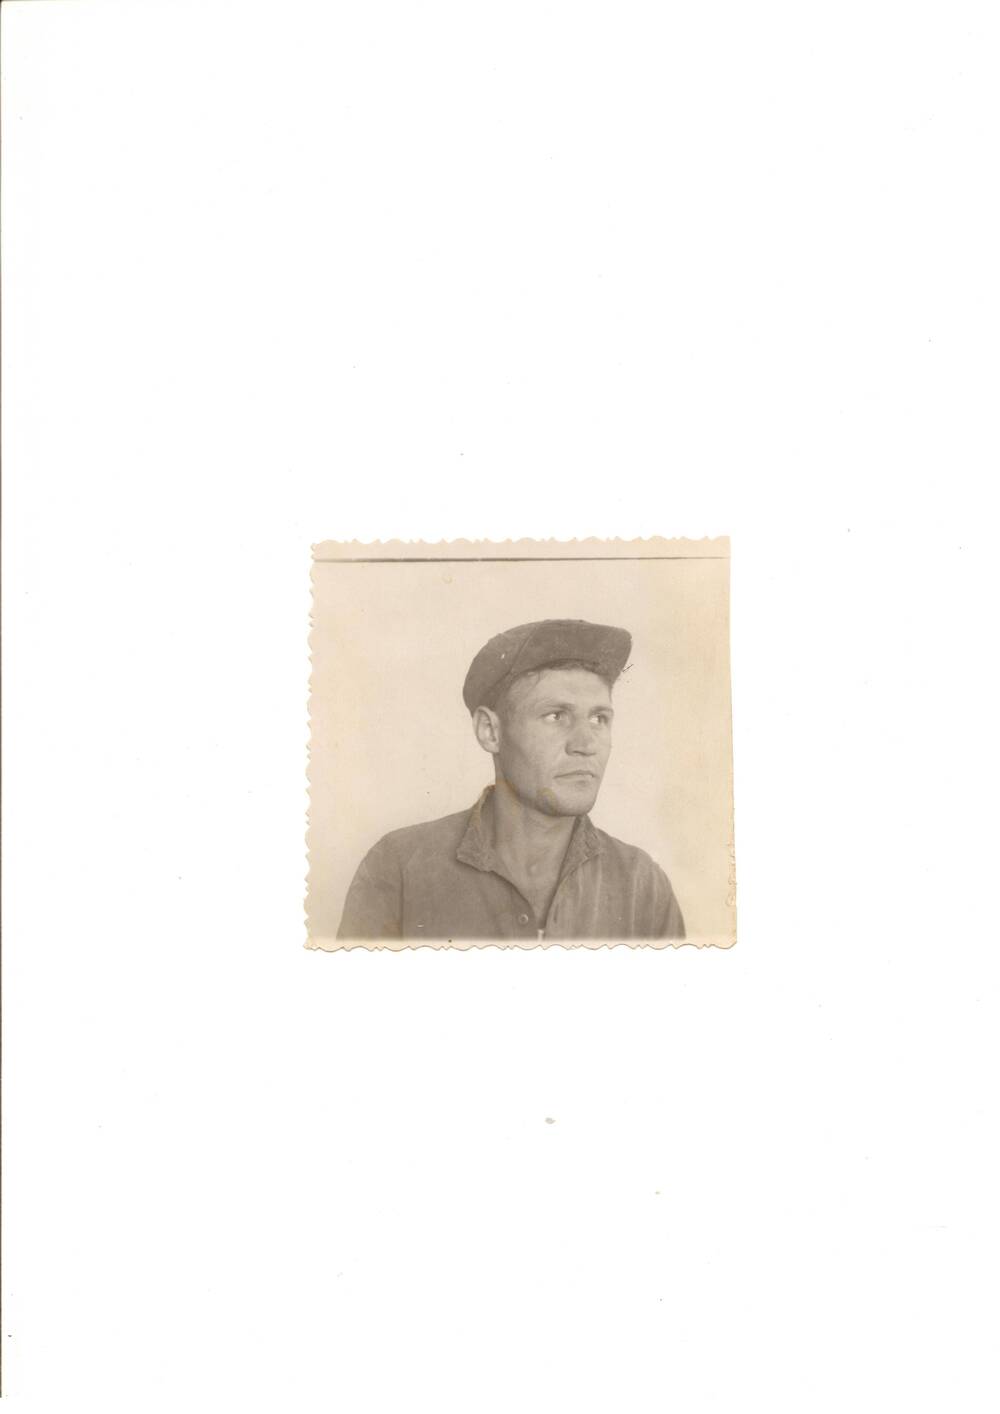 Фото черно-белое, погрудное  Кожакина И. К. – механизатора первоцелинника совхоза «Волго-Дон» Калачевского района, 1950